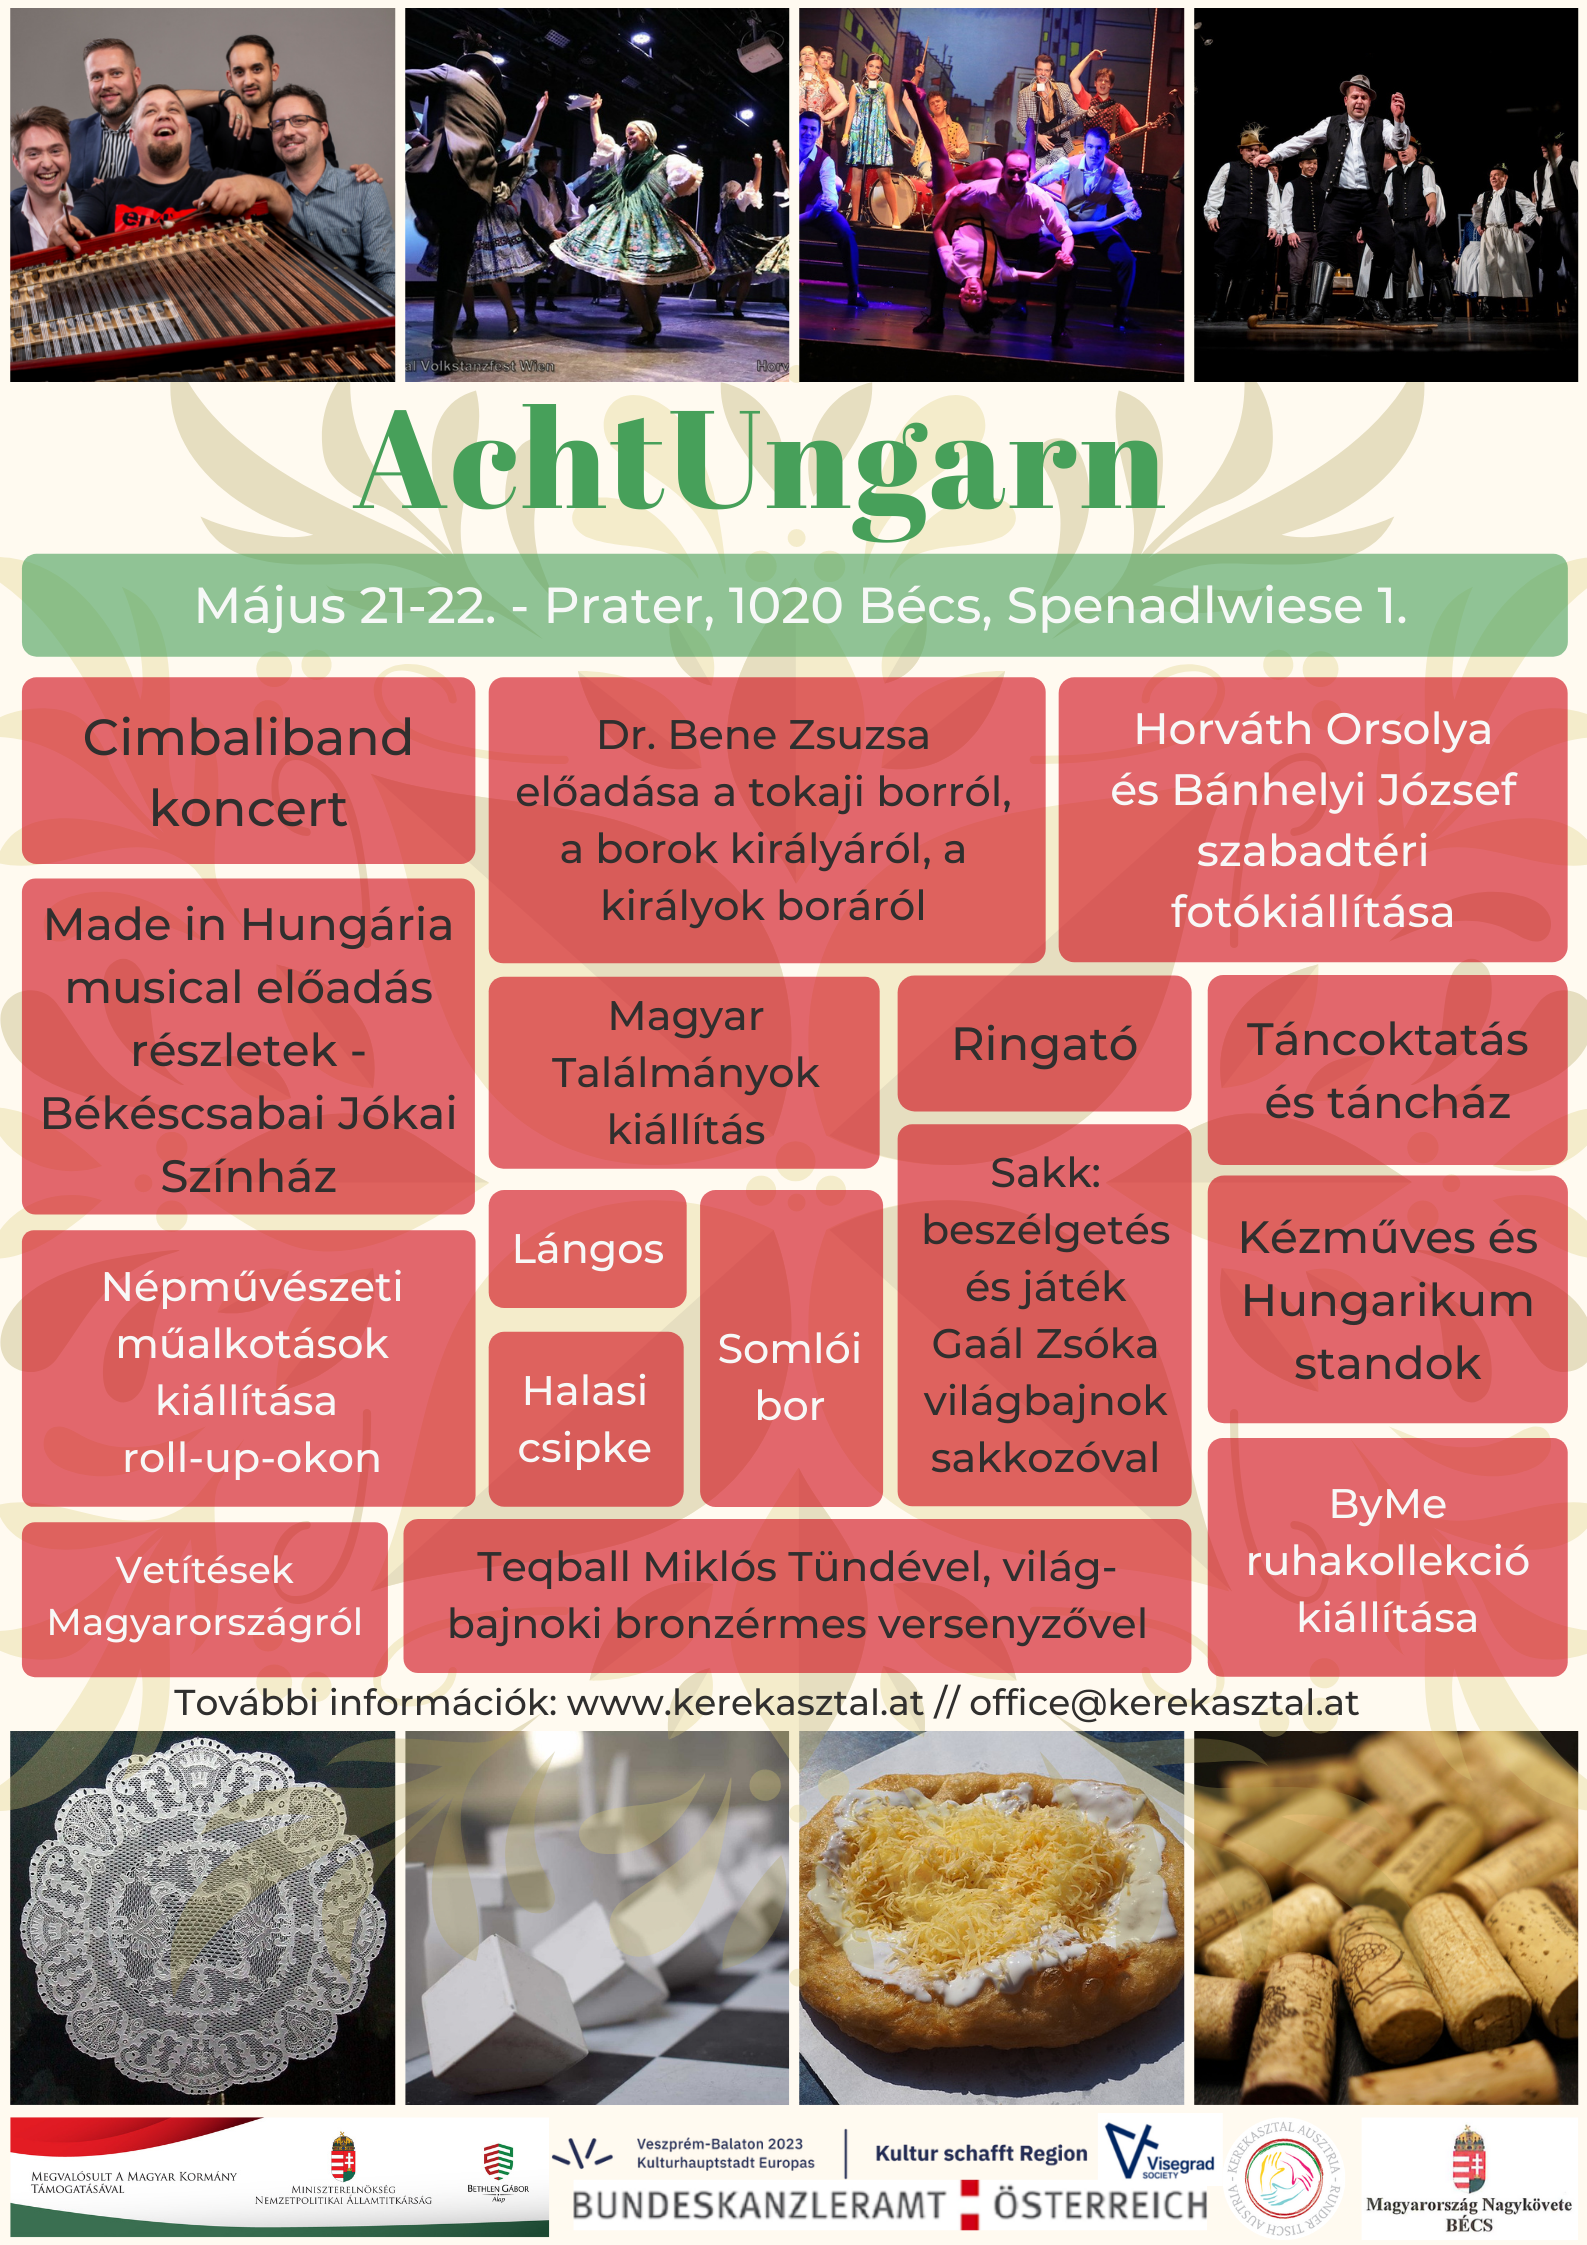 Elérhető az AchtUngarn fesztivál programja!